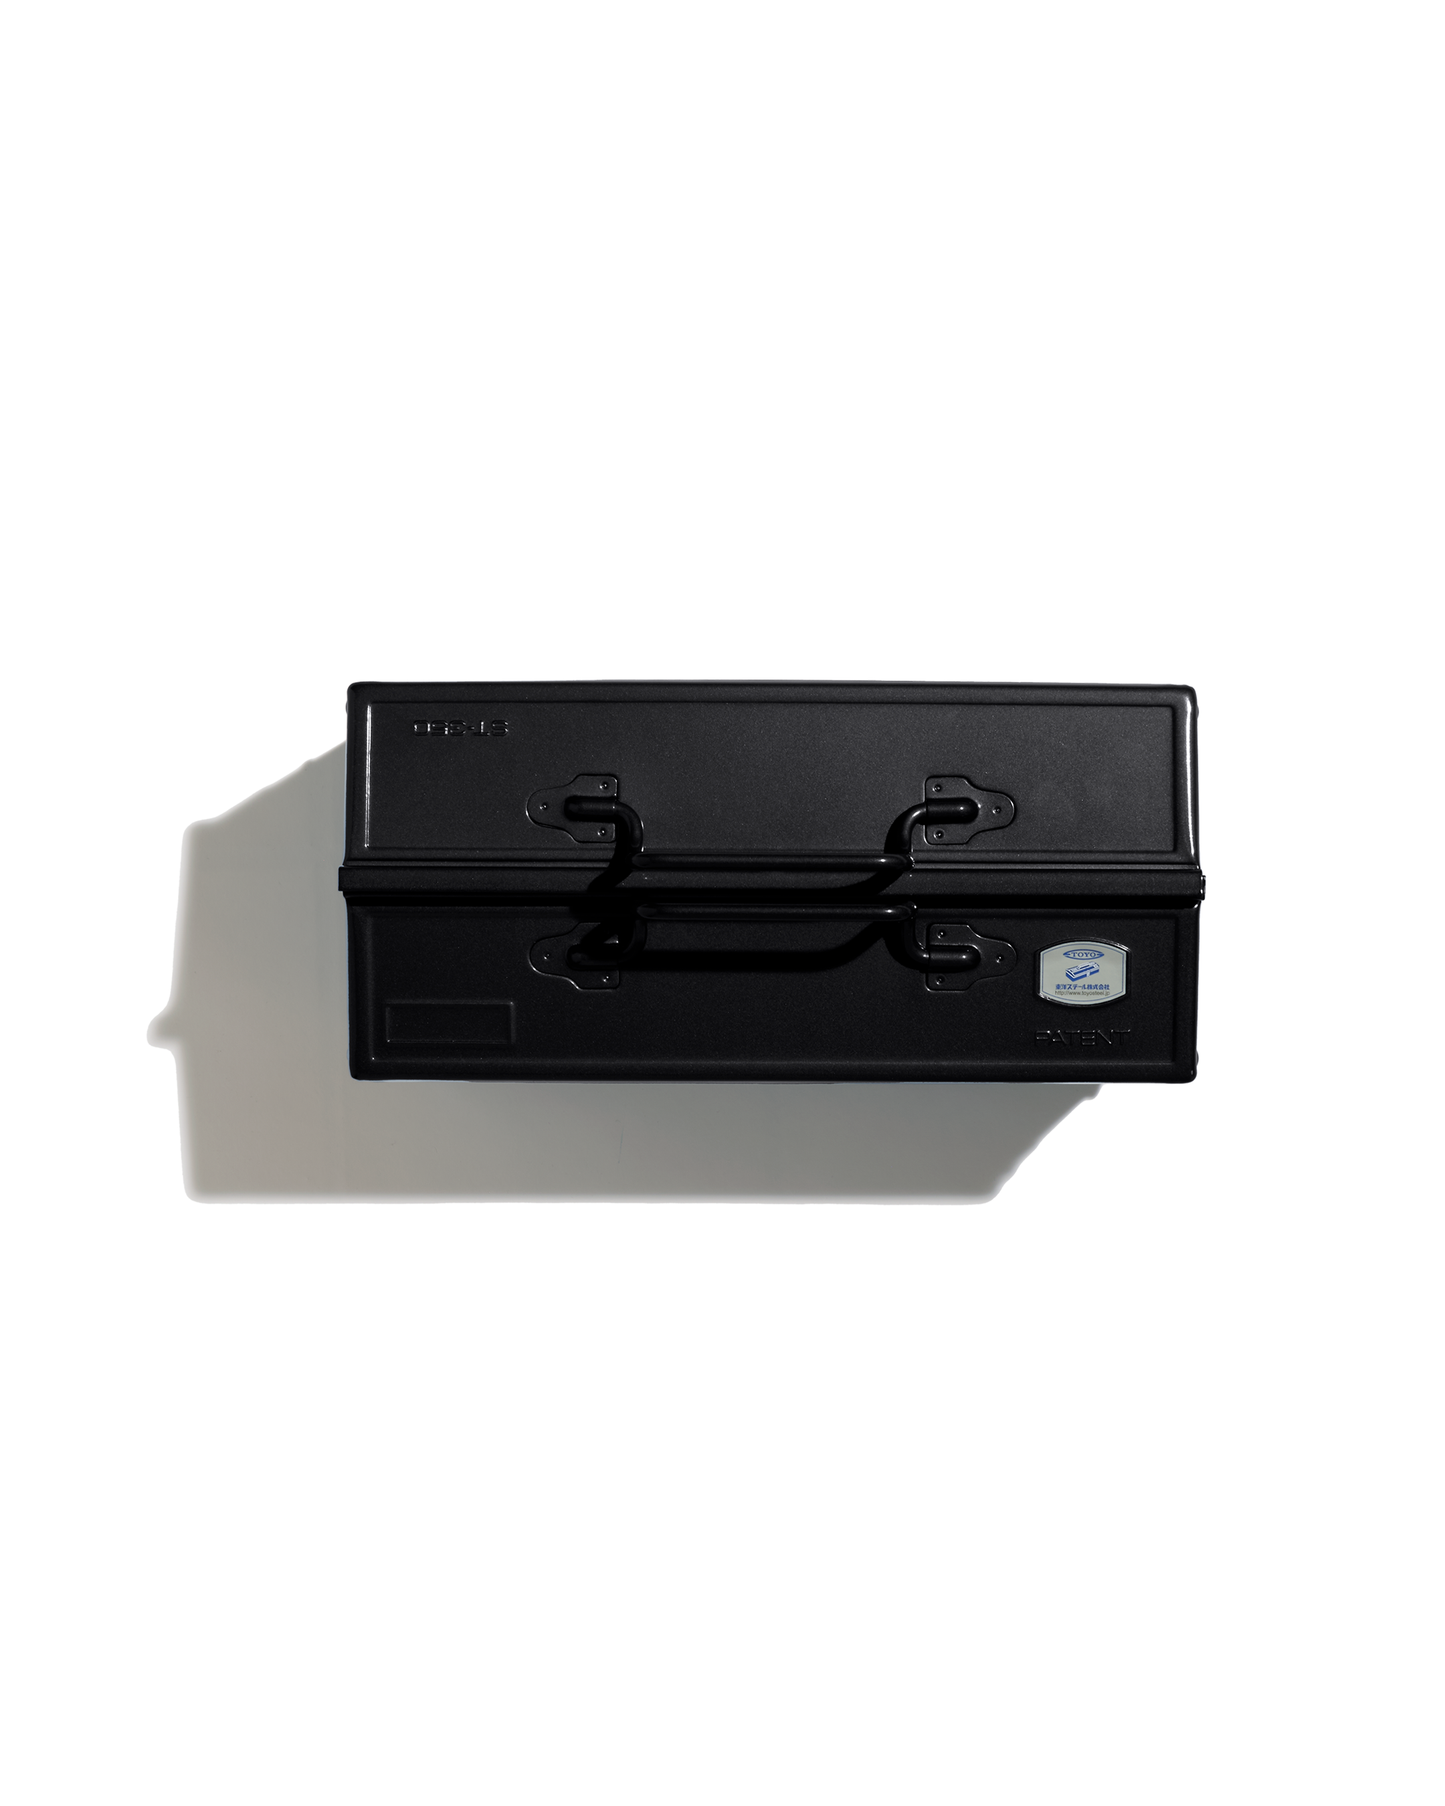 Toyo Steel ST-350 black tool box